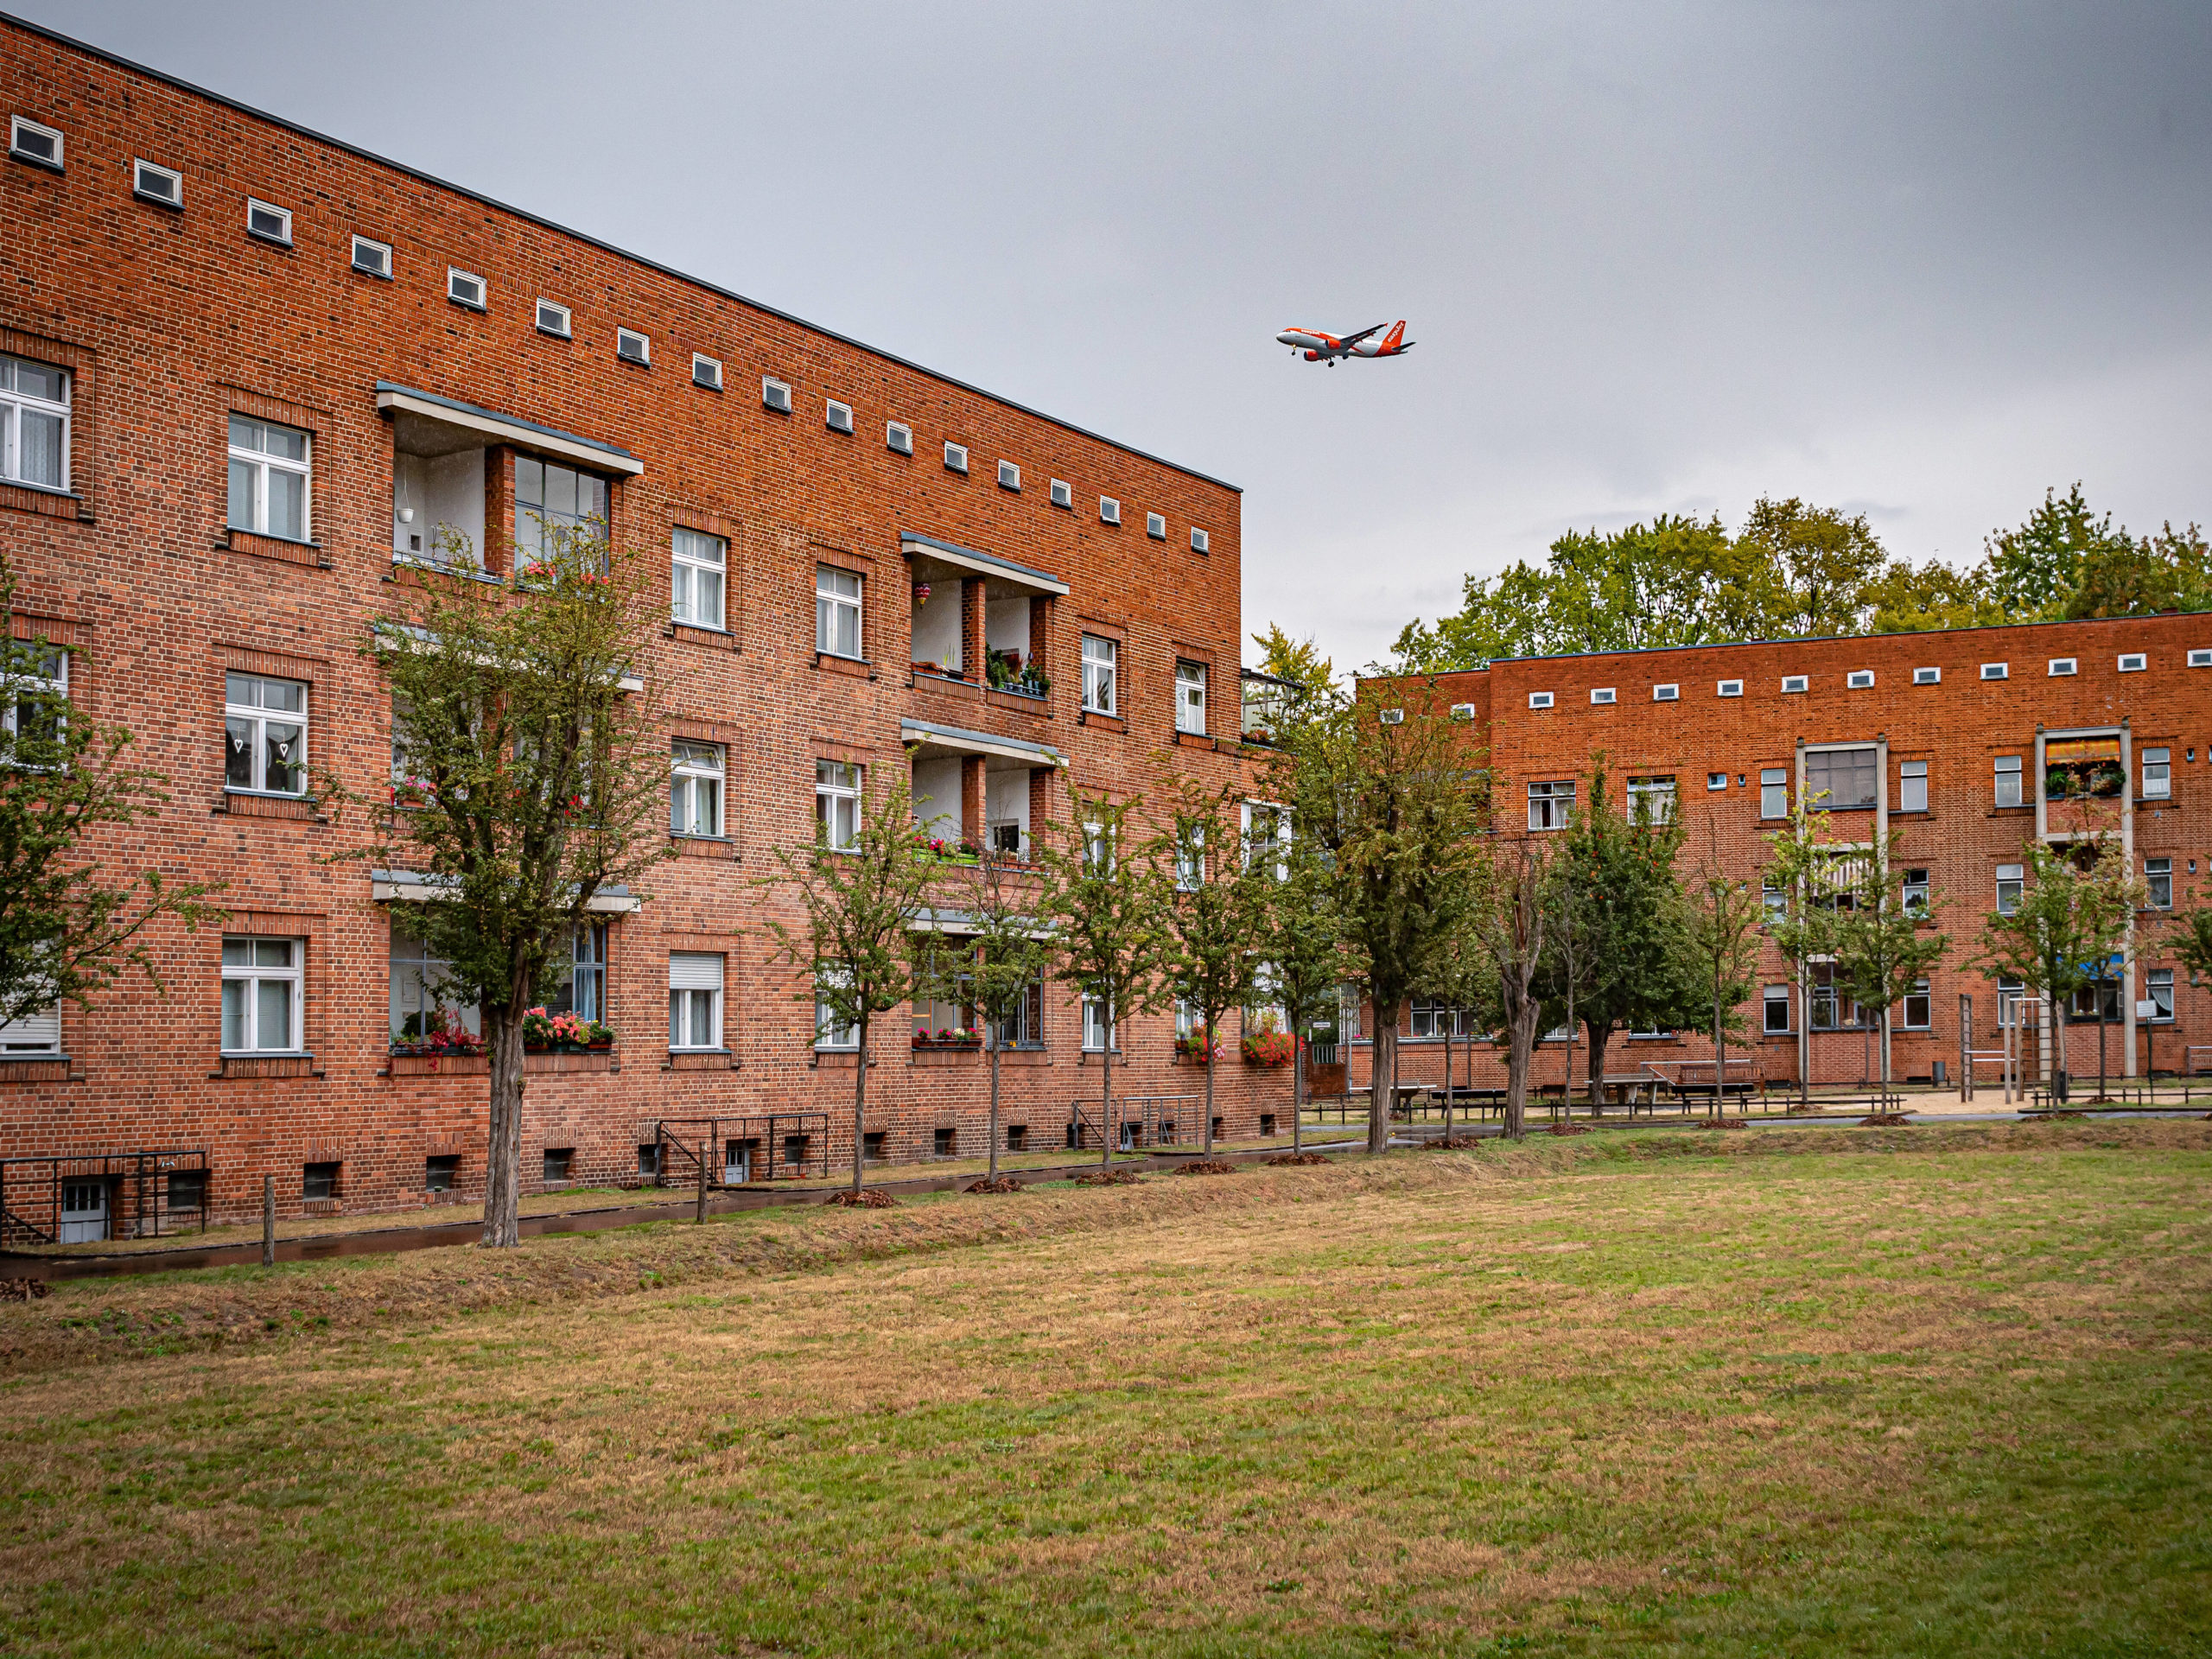 Siedlungen der Berliner Moderne: Siedlung Schillerpark. Foto: Imago/Jürgen Ritter